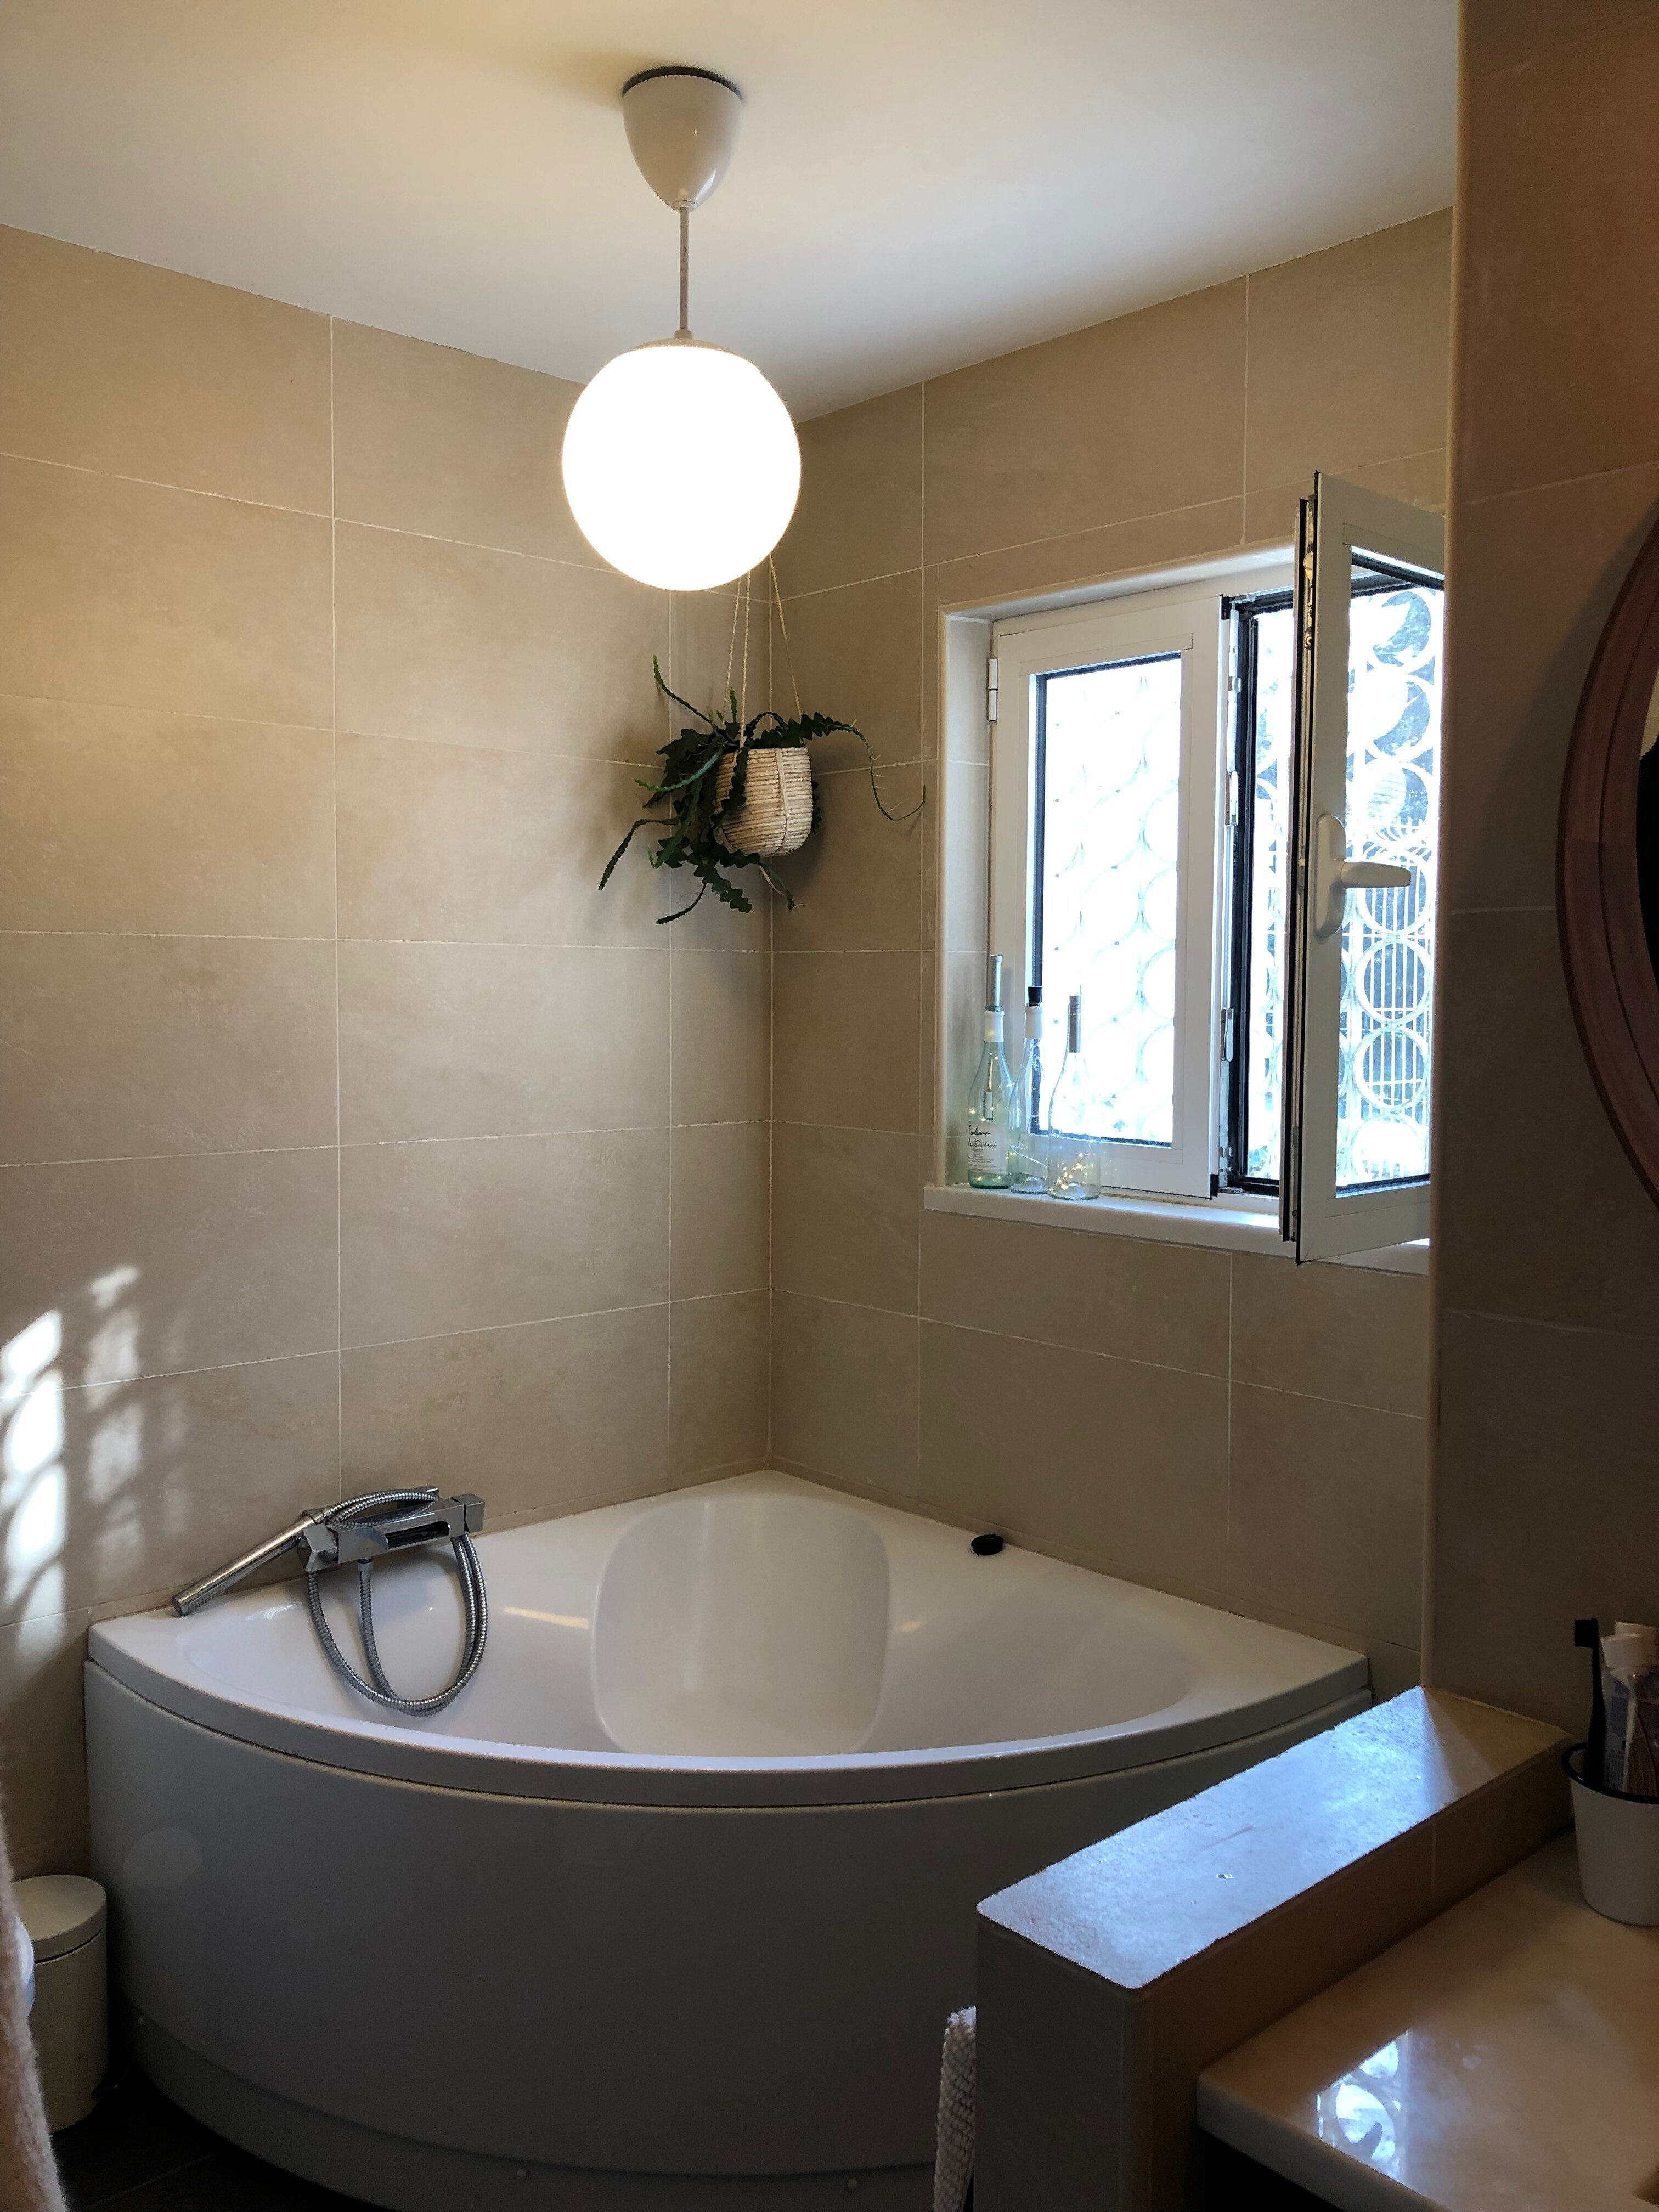 人気が高い バスルームキャビネット ヨーロッパ風 304ステンレス 陶磁器 洗面器 セット 鏡キャビネット 壁掛け バスルーム棚 3点セット 